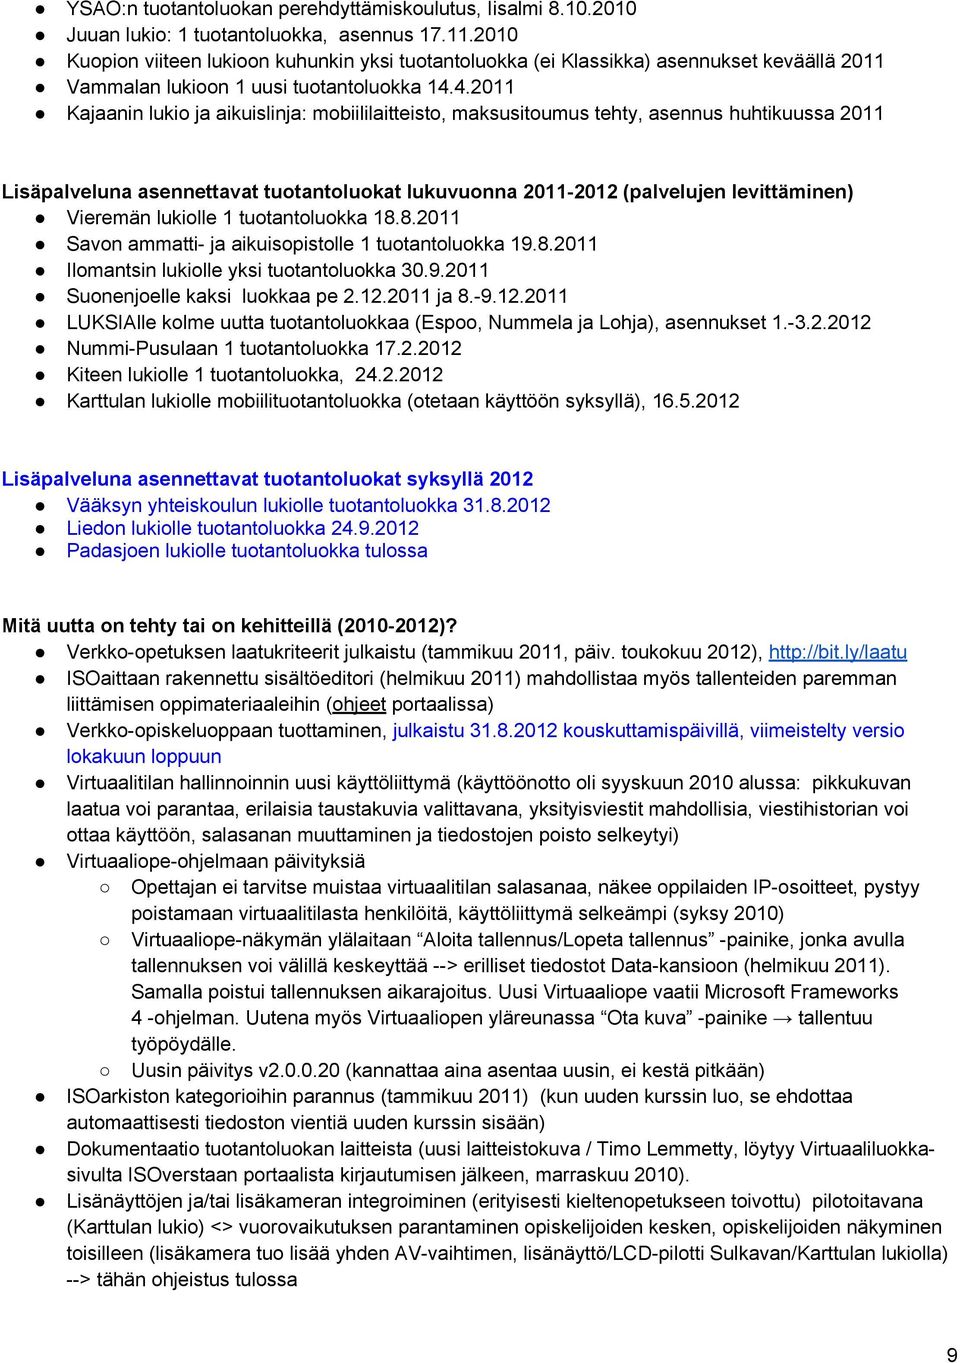 4.2011 Kajaanin lukio ja aikuislinja: mobiililaitteisto, maksusitoumus tehty, asennus huhtikuussa 2011 Lisäpalveluna asennettavat tuotantoluokat lukuvuonna 2011-2012 (palvelujen levittäminen)